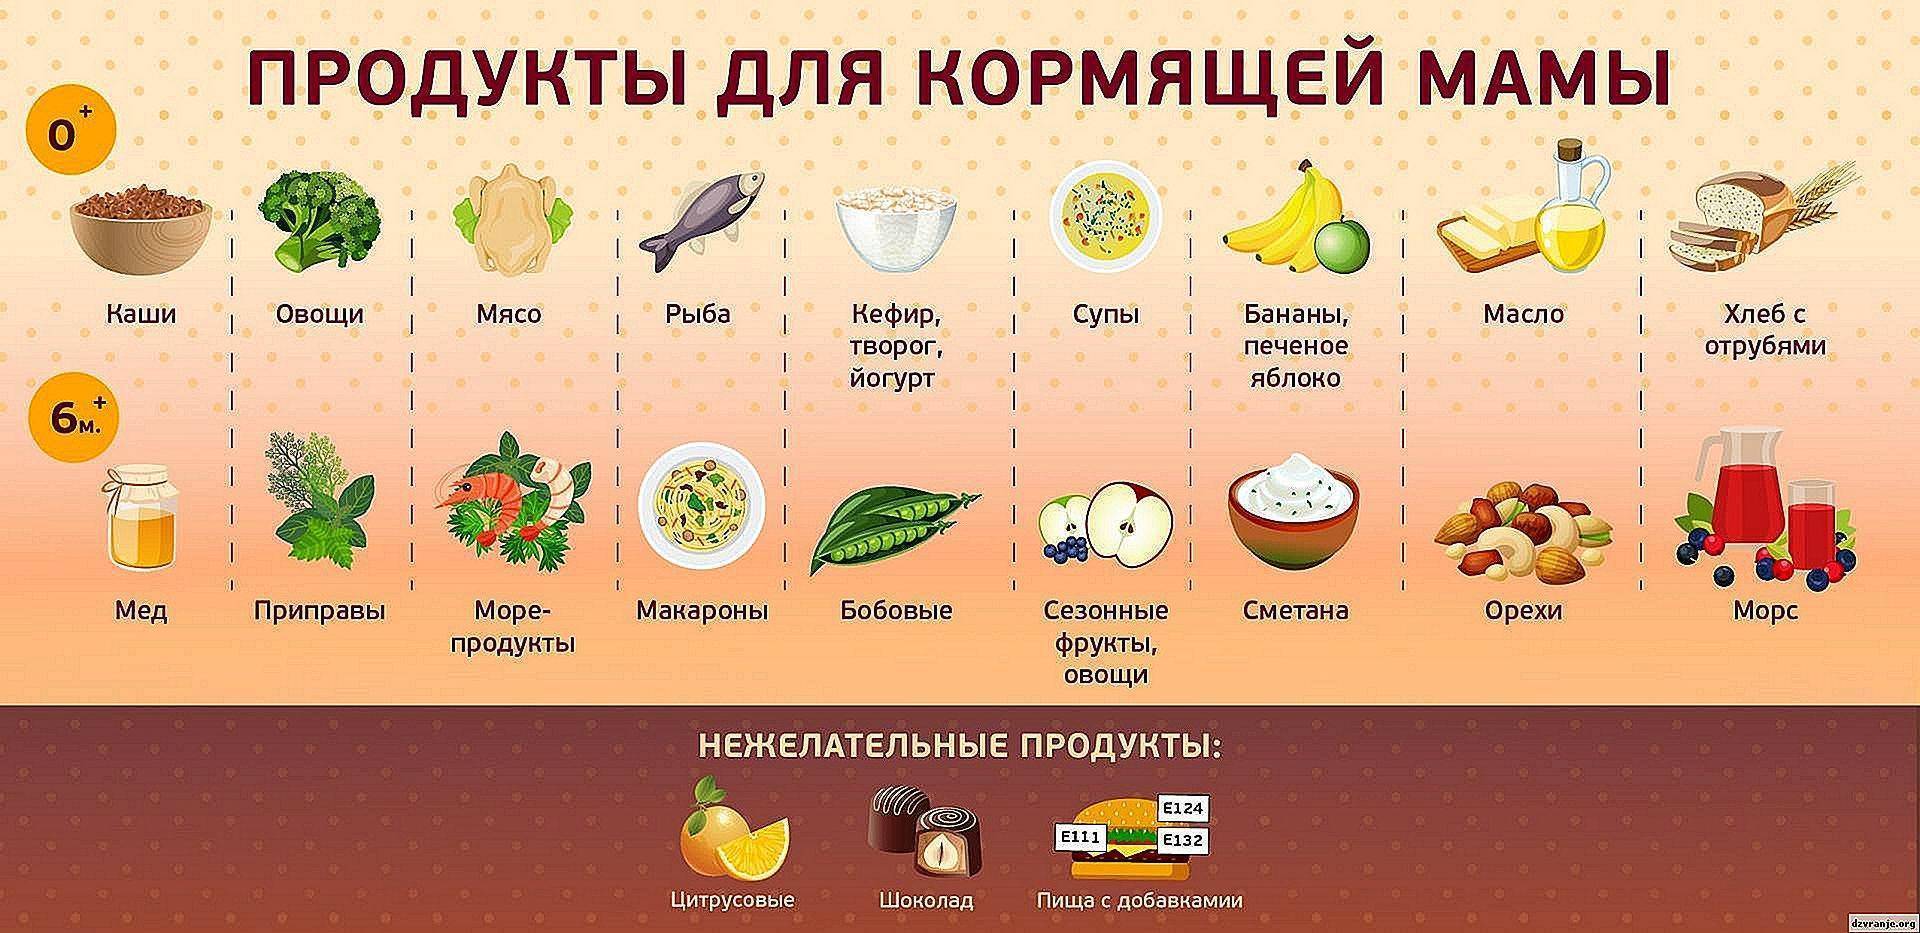 Можно ли шоколад кормящей маме при грудном вскармливании? :: syl.ru